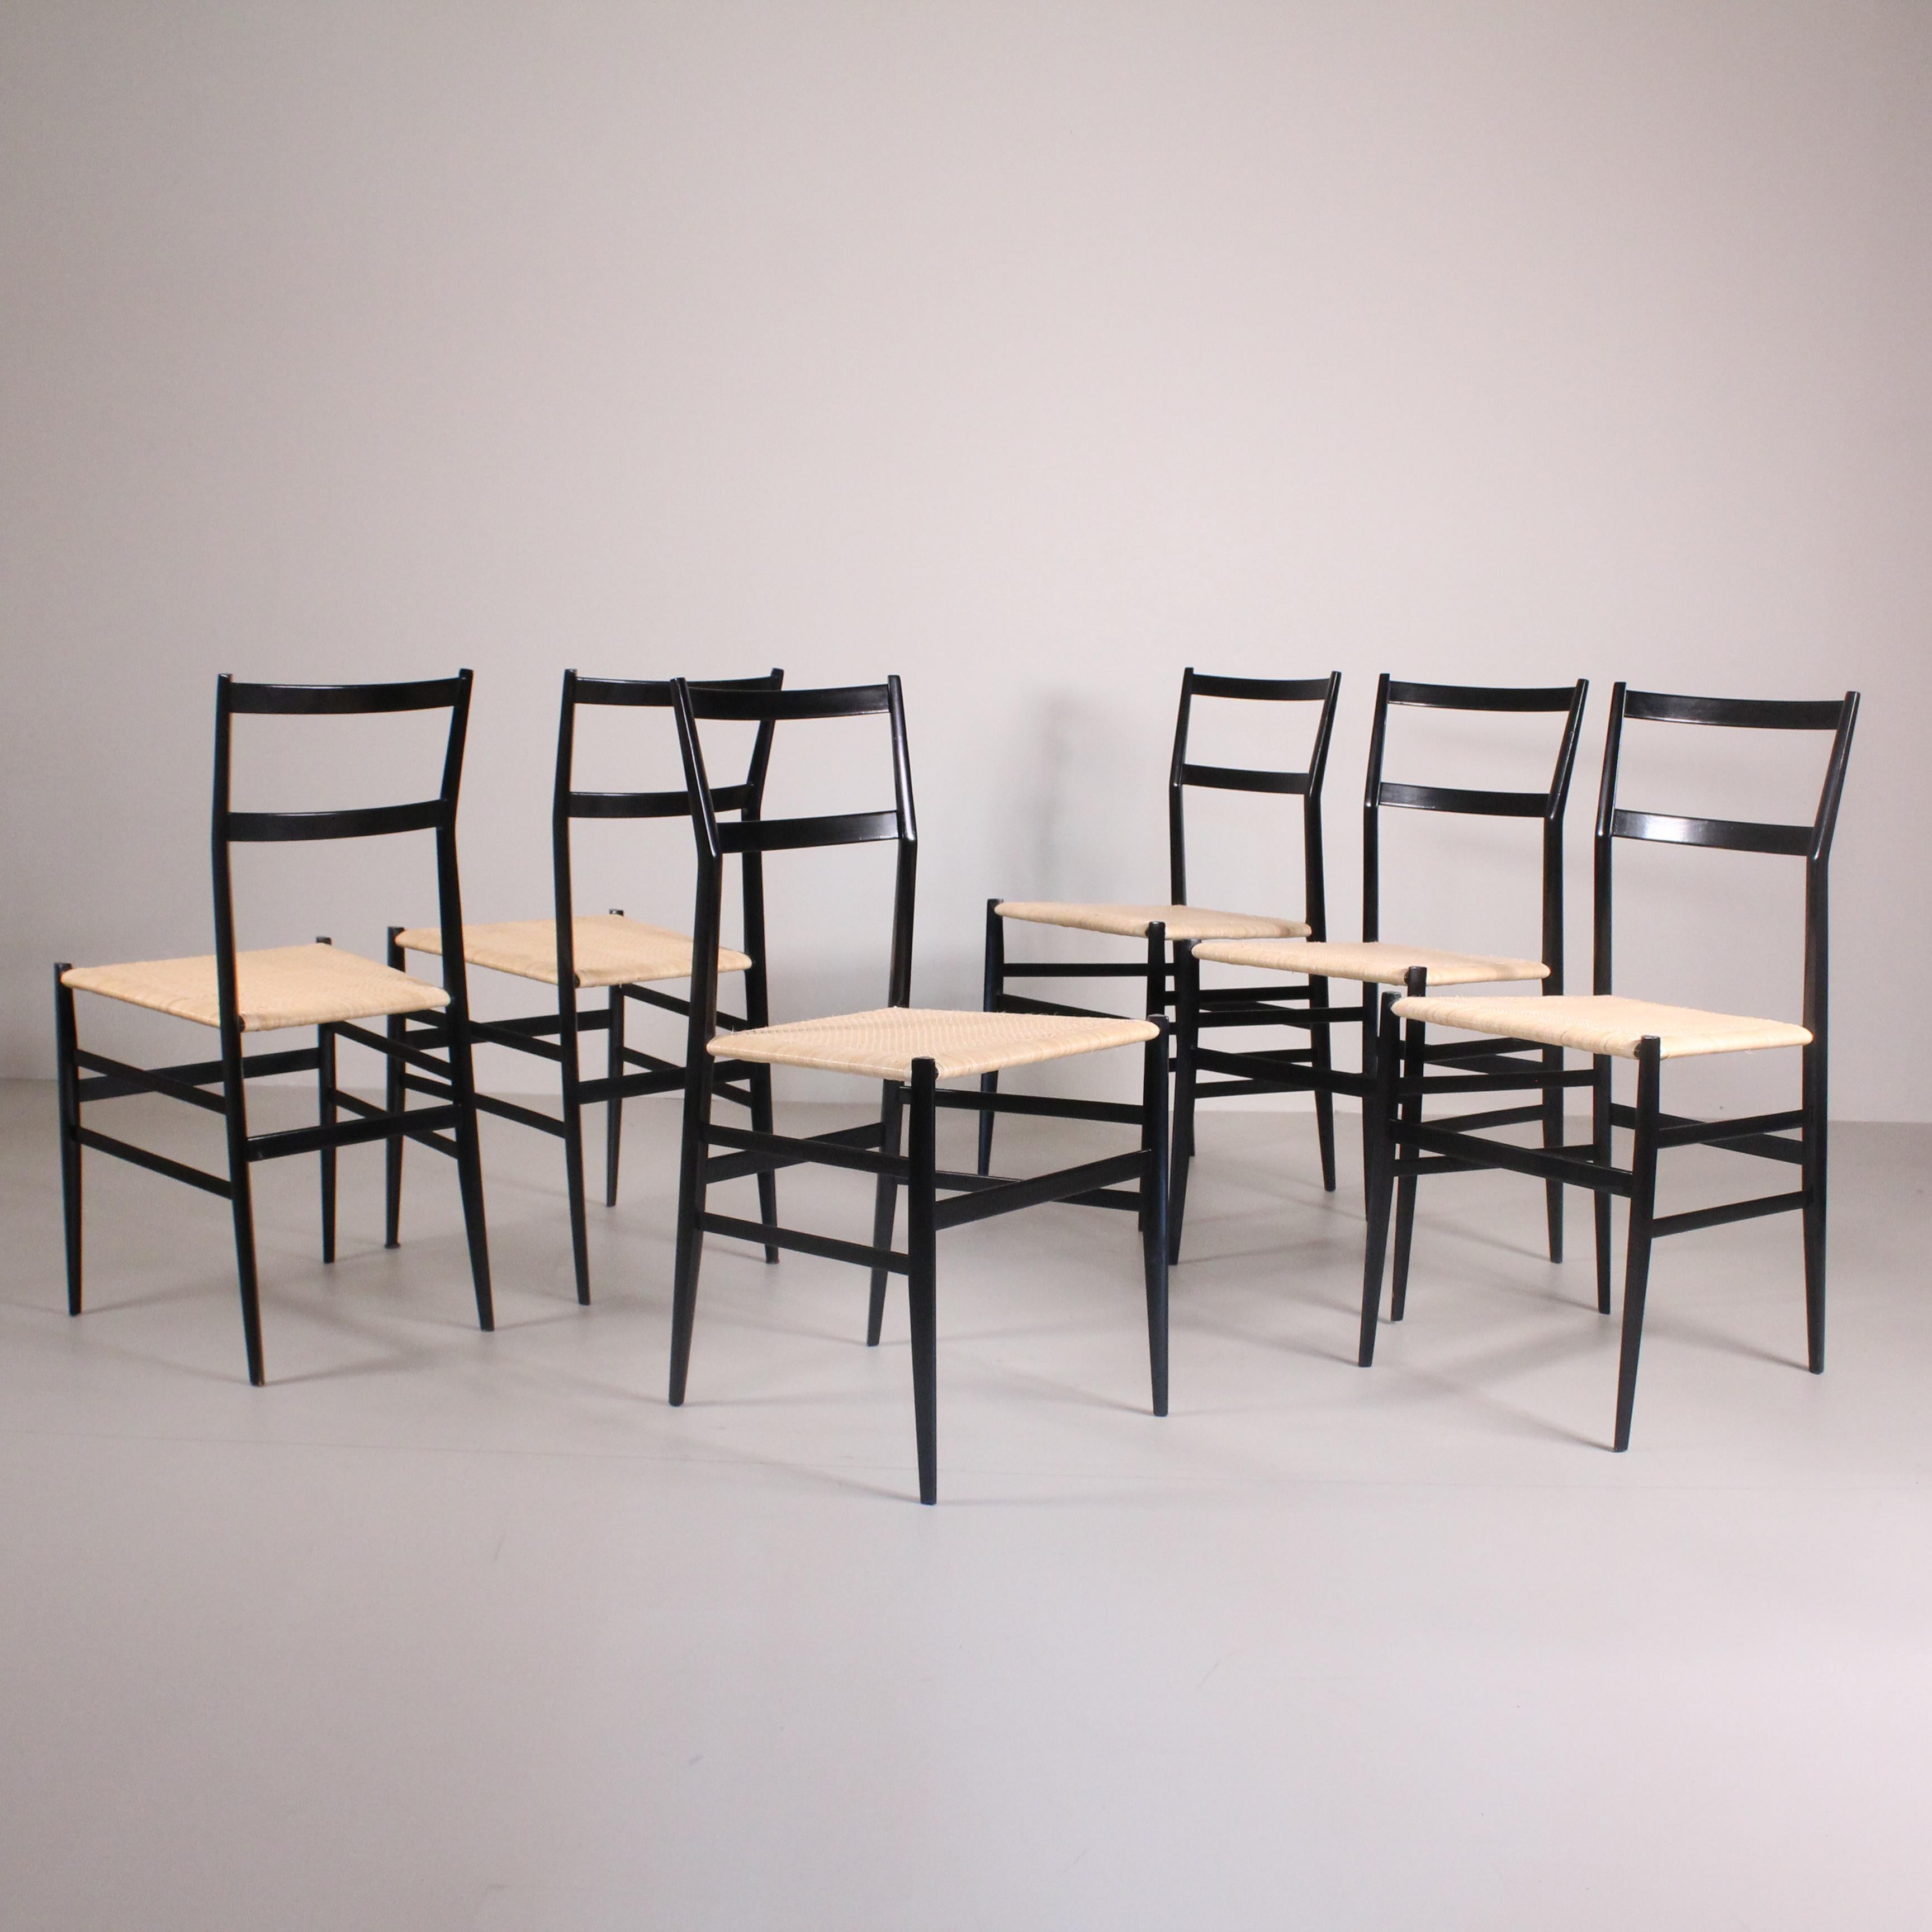 Dieses unglaubliche Set aus 6 Superleggera-Stühlen, das Gio Ponti 1950 für Cassina entworfen hat, verkörpert die Eleganz und Leichtigkeit der modernen Ästhetik. Diese ikonischen Stühle zeichnen sich durch klare, schlanke Linien aus, die die